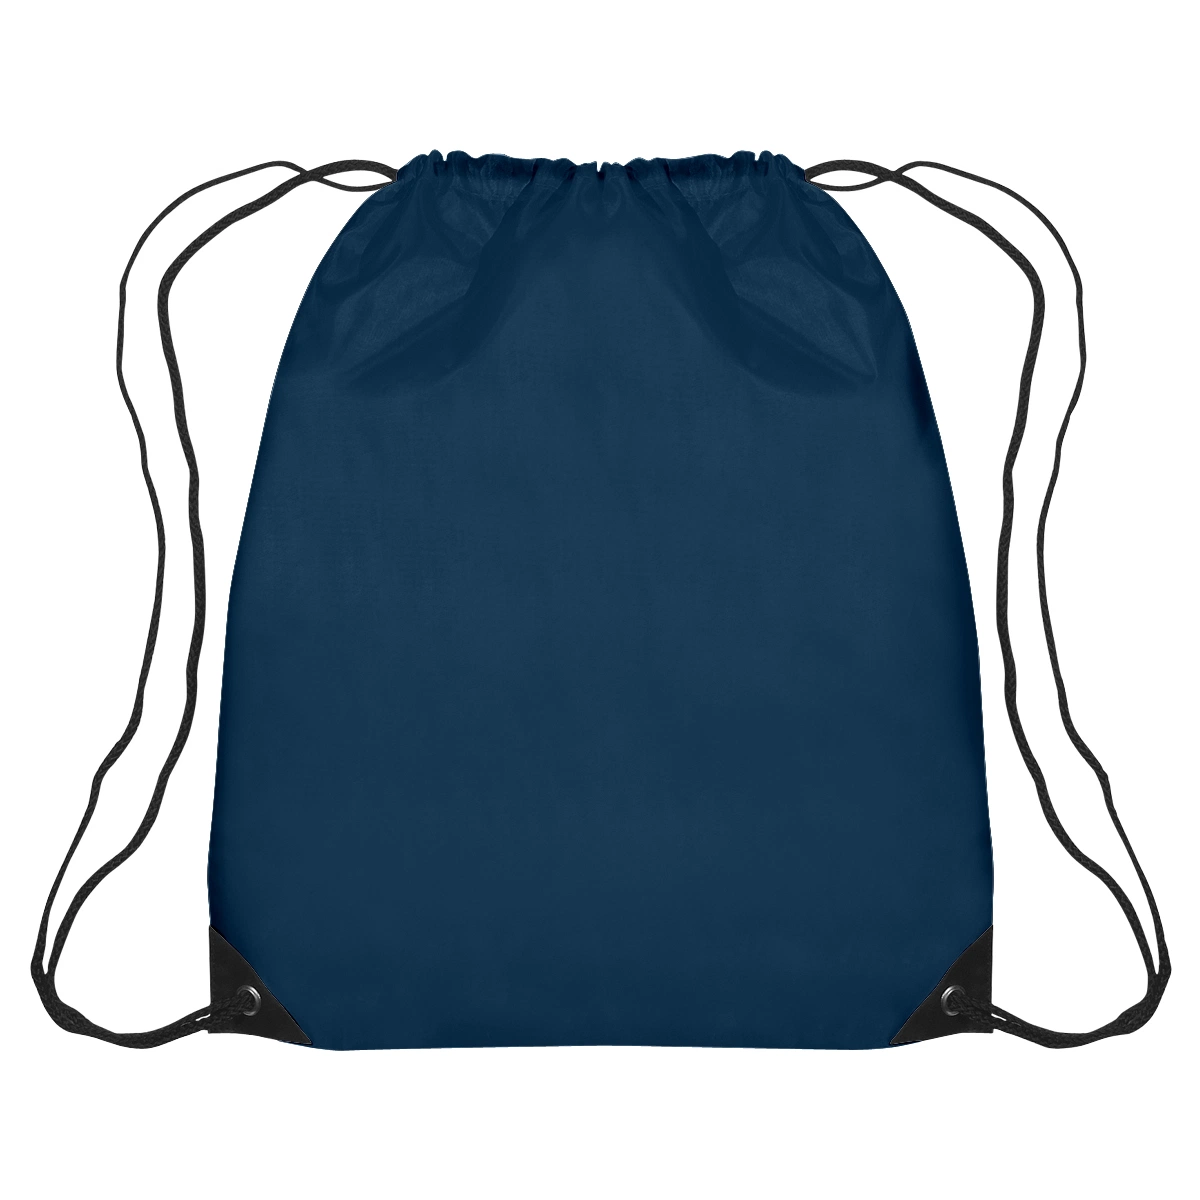 [بولستر] مخصص رسم خيط حزمة حقيبة حقيبة فنايشاك [دروبوشتيرد] حقائب رياضات